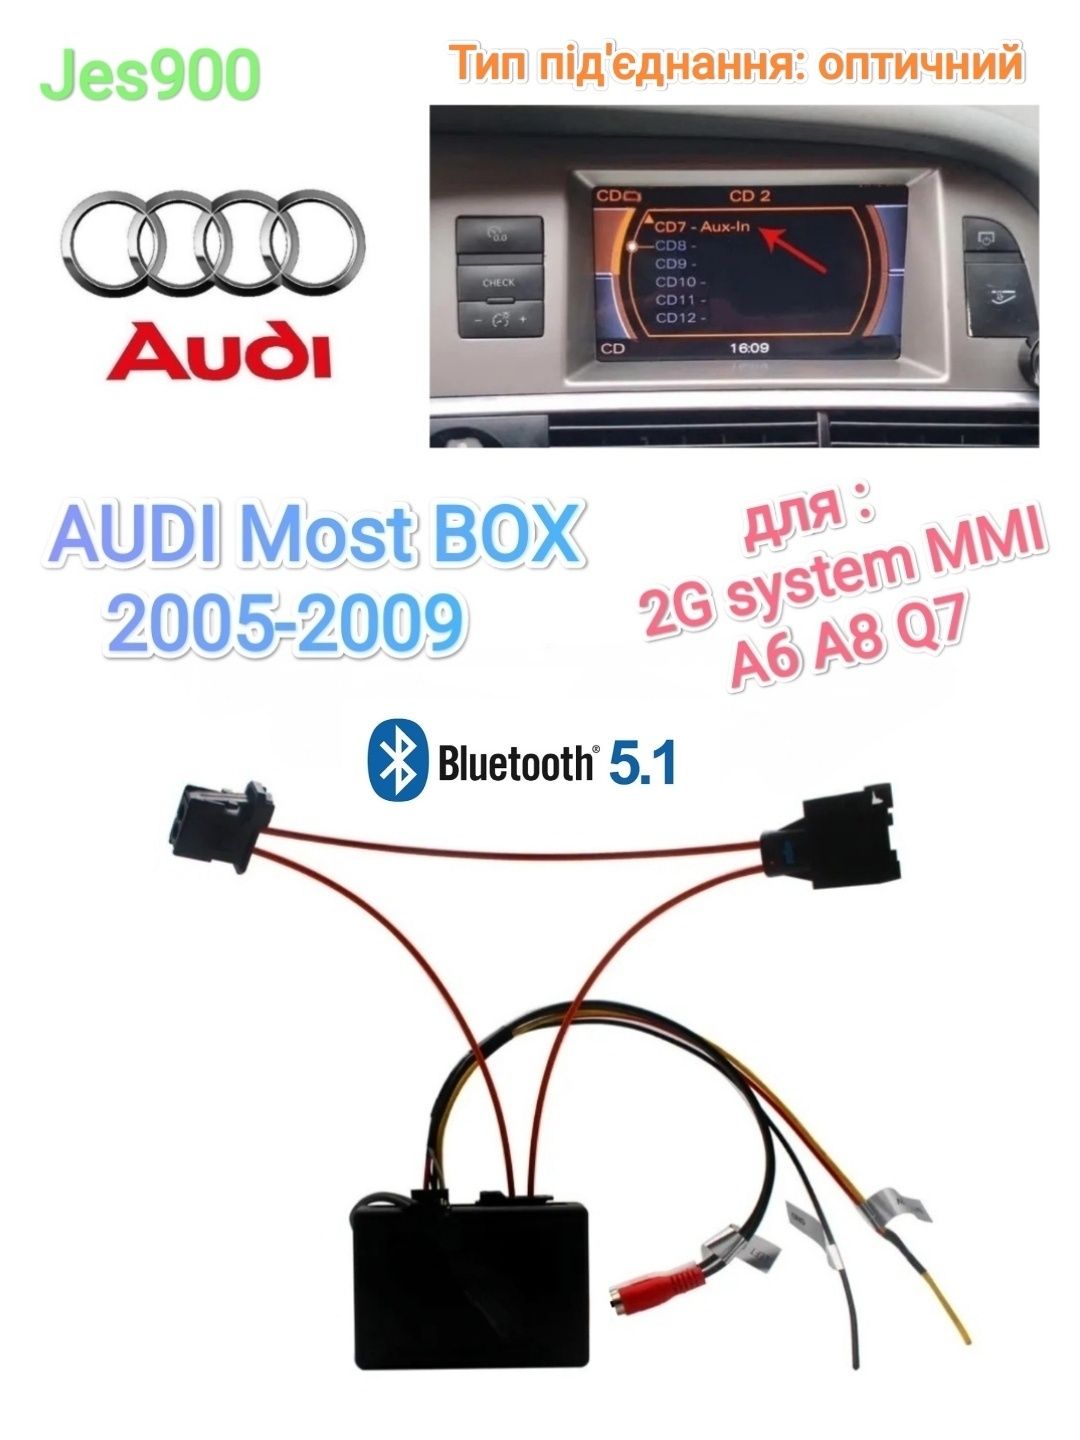 Music Most BOX Bluetooth 5.1+AUX ОПТИКА Audi A6 A8 Q7 2G MMI RCA аукс